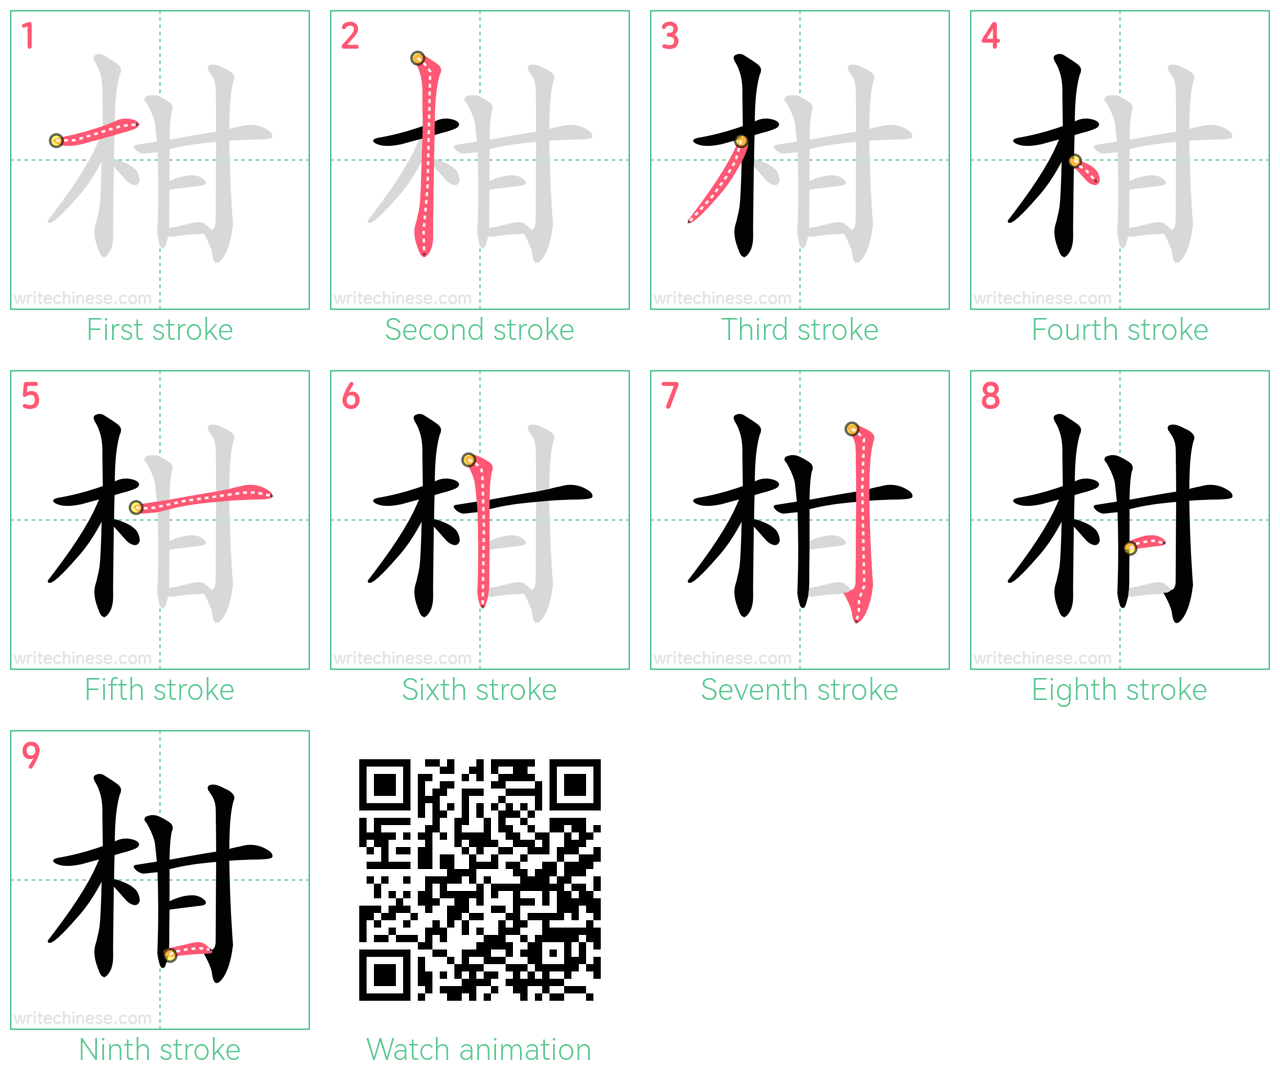 柑 step-by-step stroke order diagrams